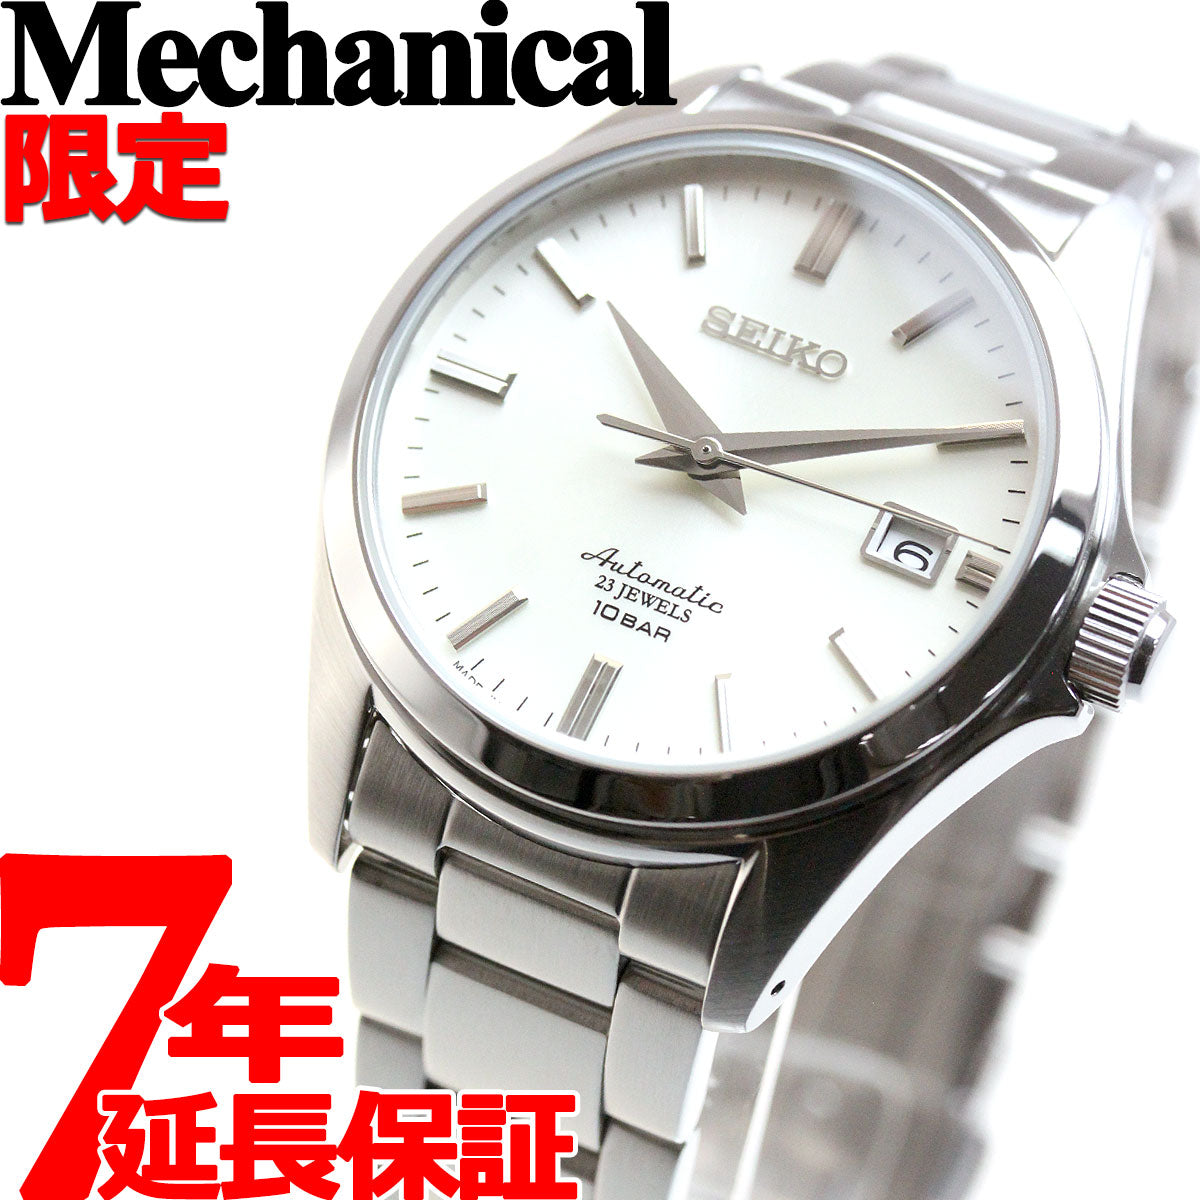 セイコー メカニカル SEIKO Mechanical 自動巻き メカニカル 先行販売 ネット流通限定モデル 腕時計 メンズ ドレスライン  SZSB011